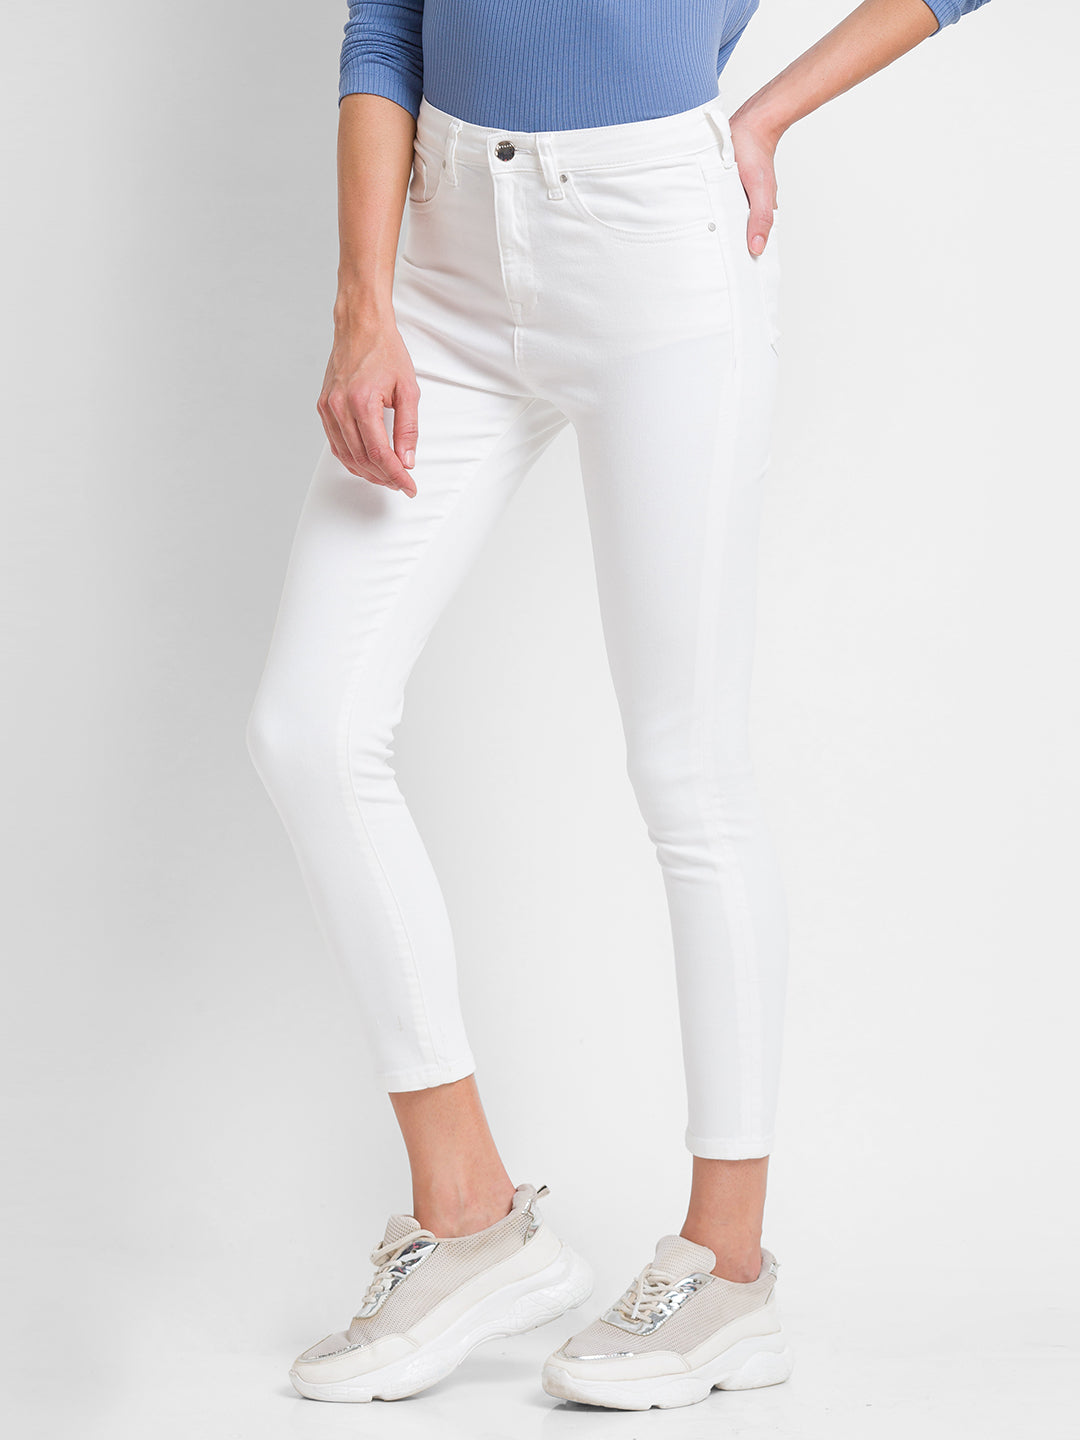 Spykar White Lycra Super Skinny Ankle Length Jeans For Women (Alexa)